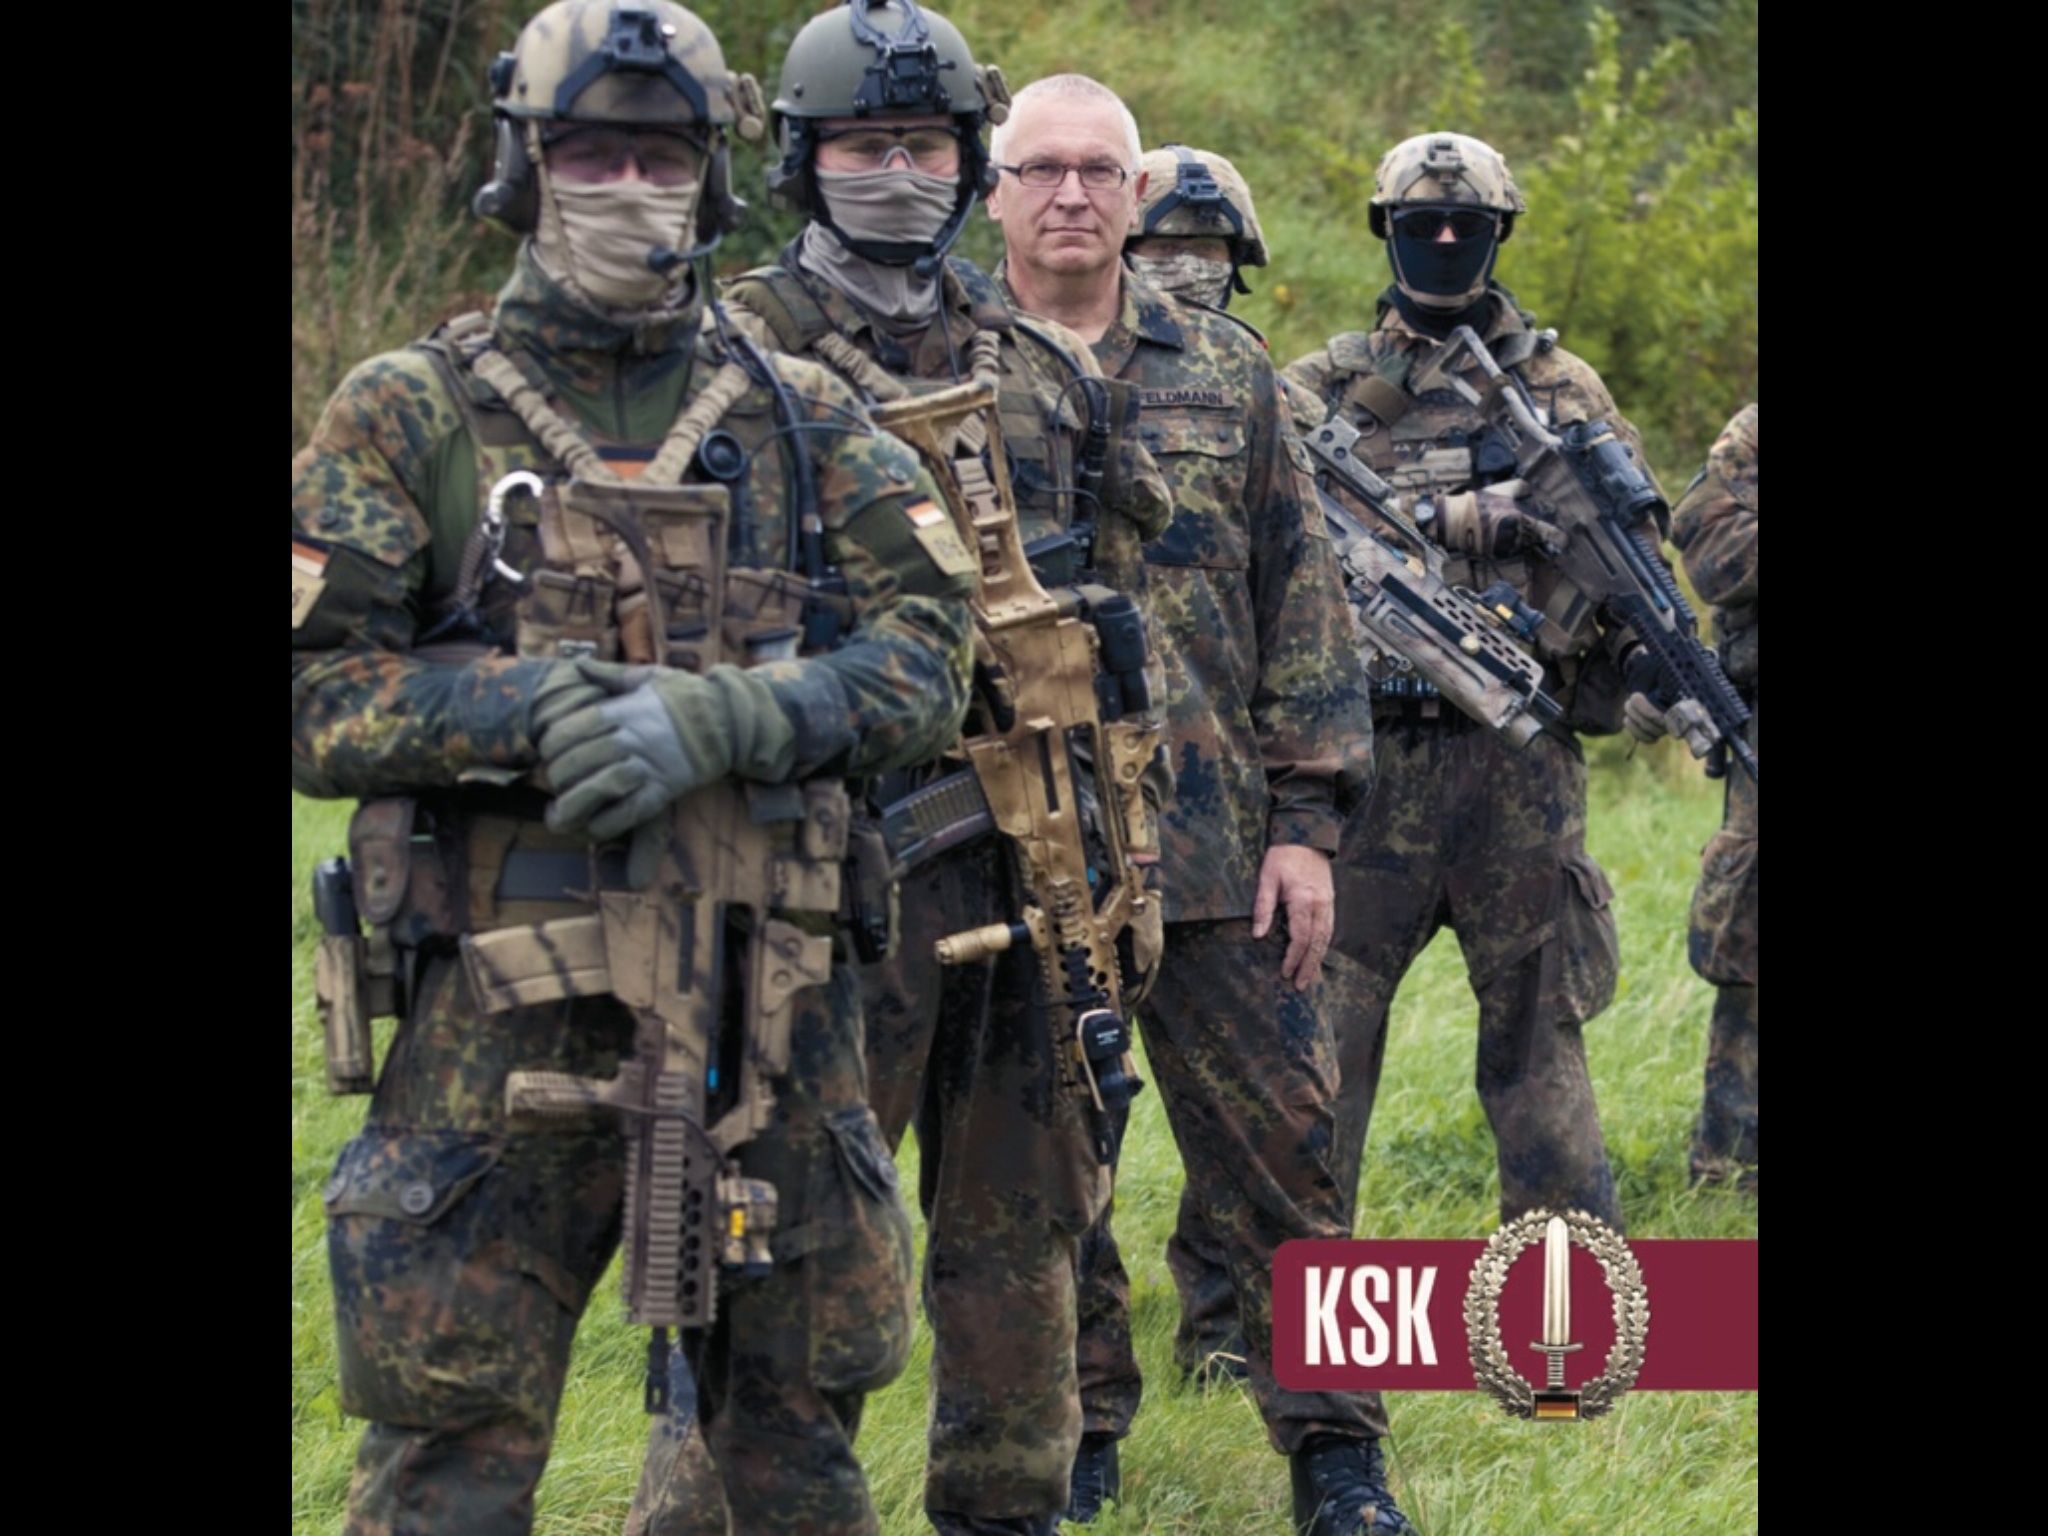 Ksk Elite Squad - German Hk Special Forces , HD Wallpaper & Backgrounds